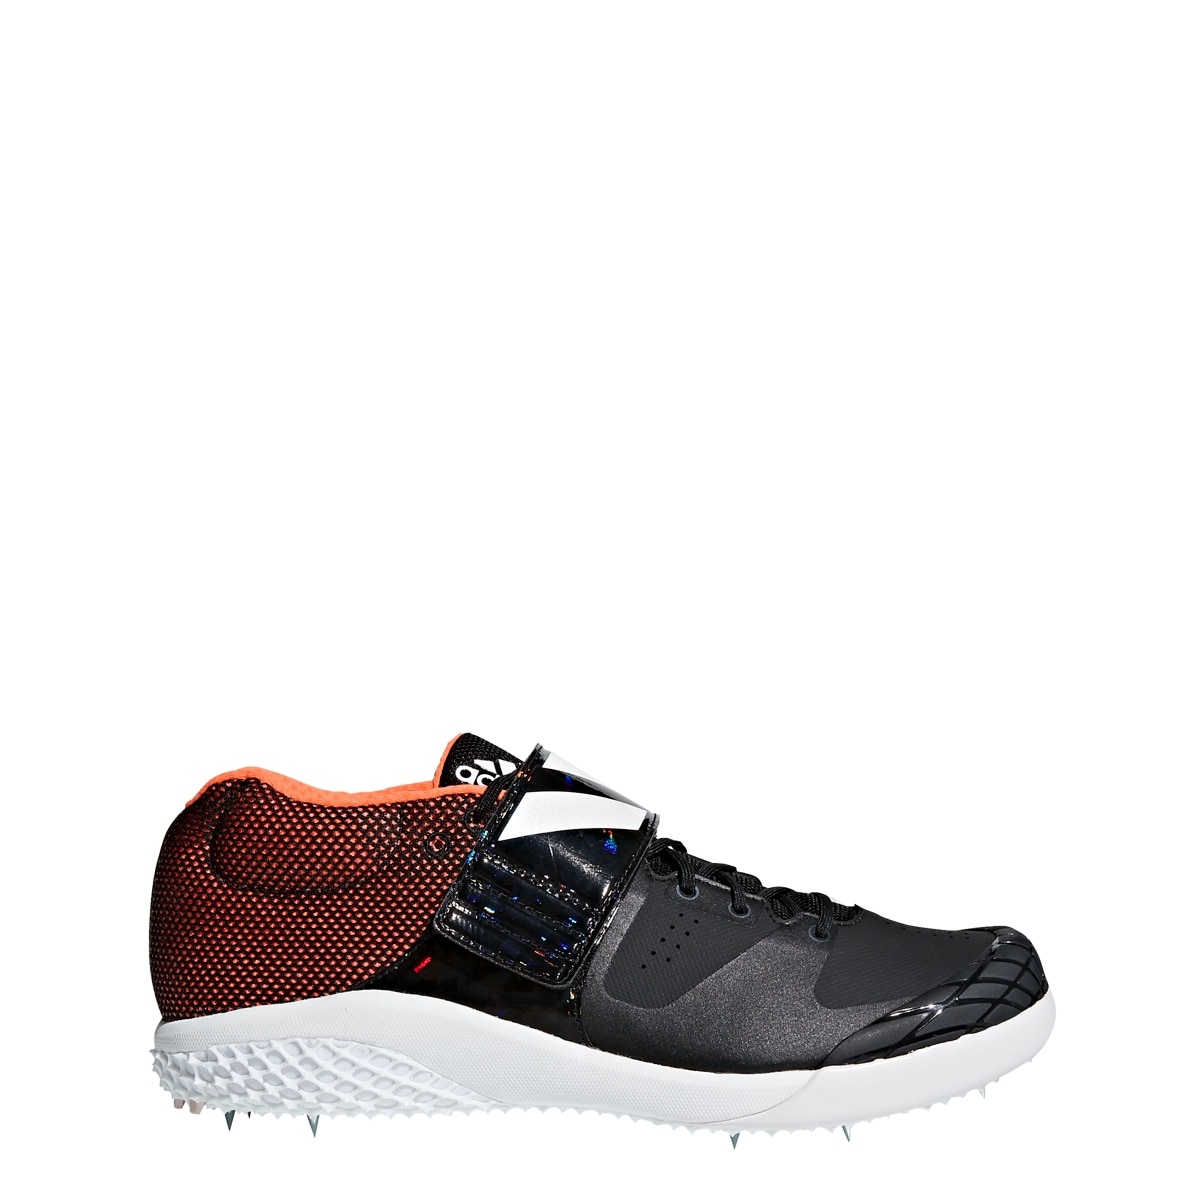 adidas performance adizero javelin running shoe